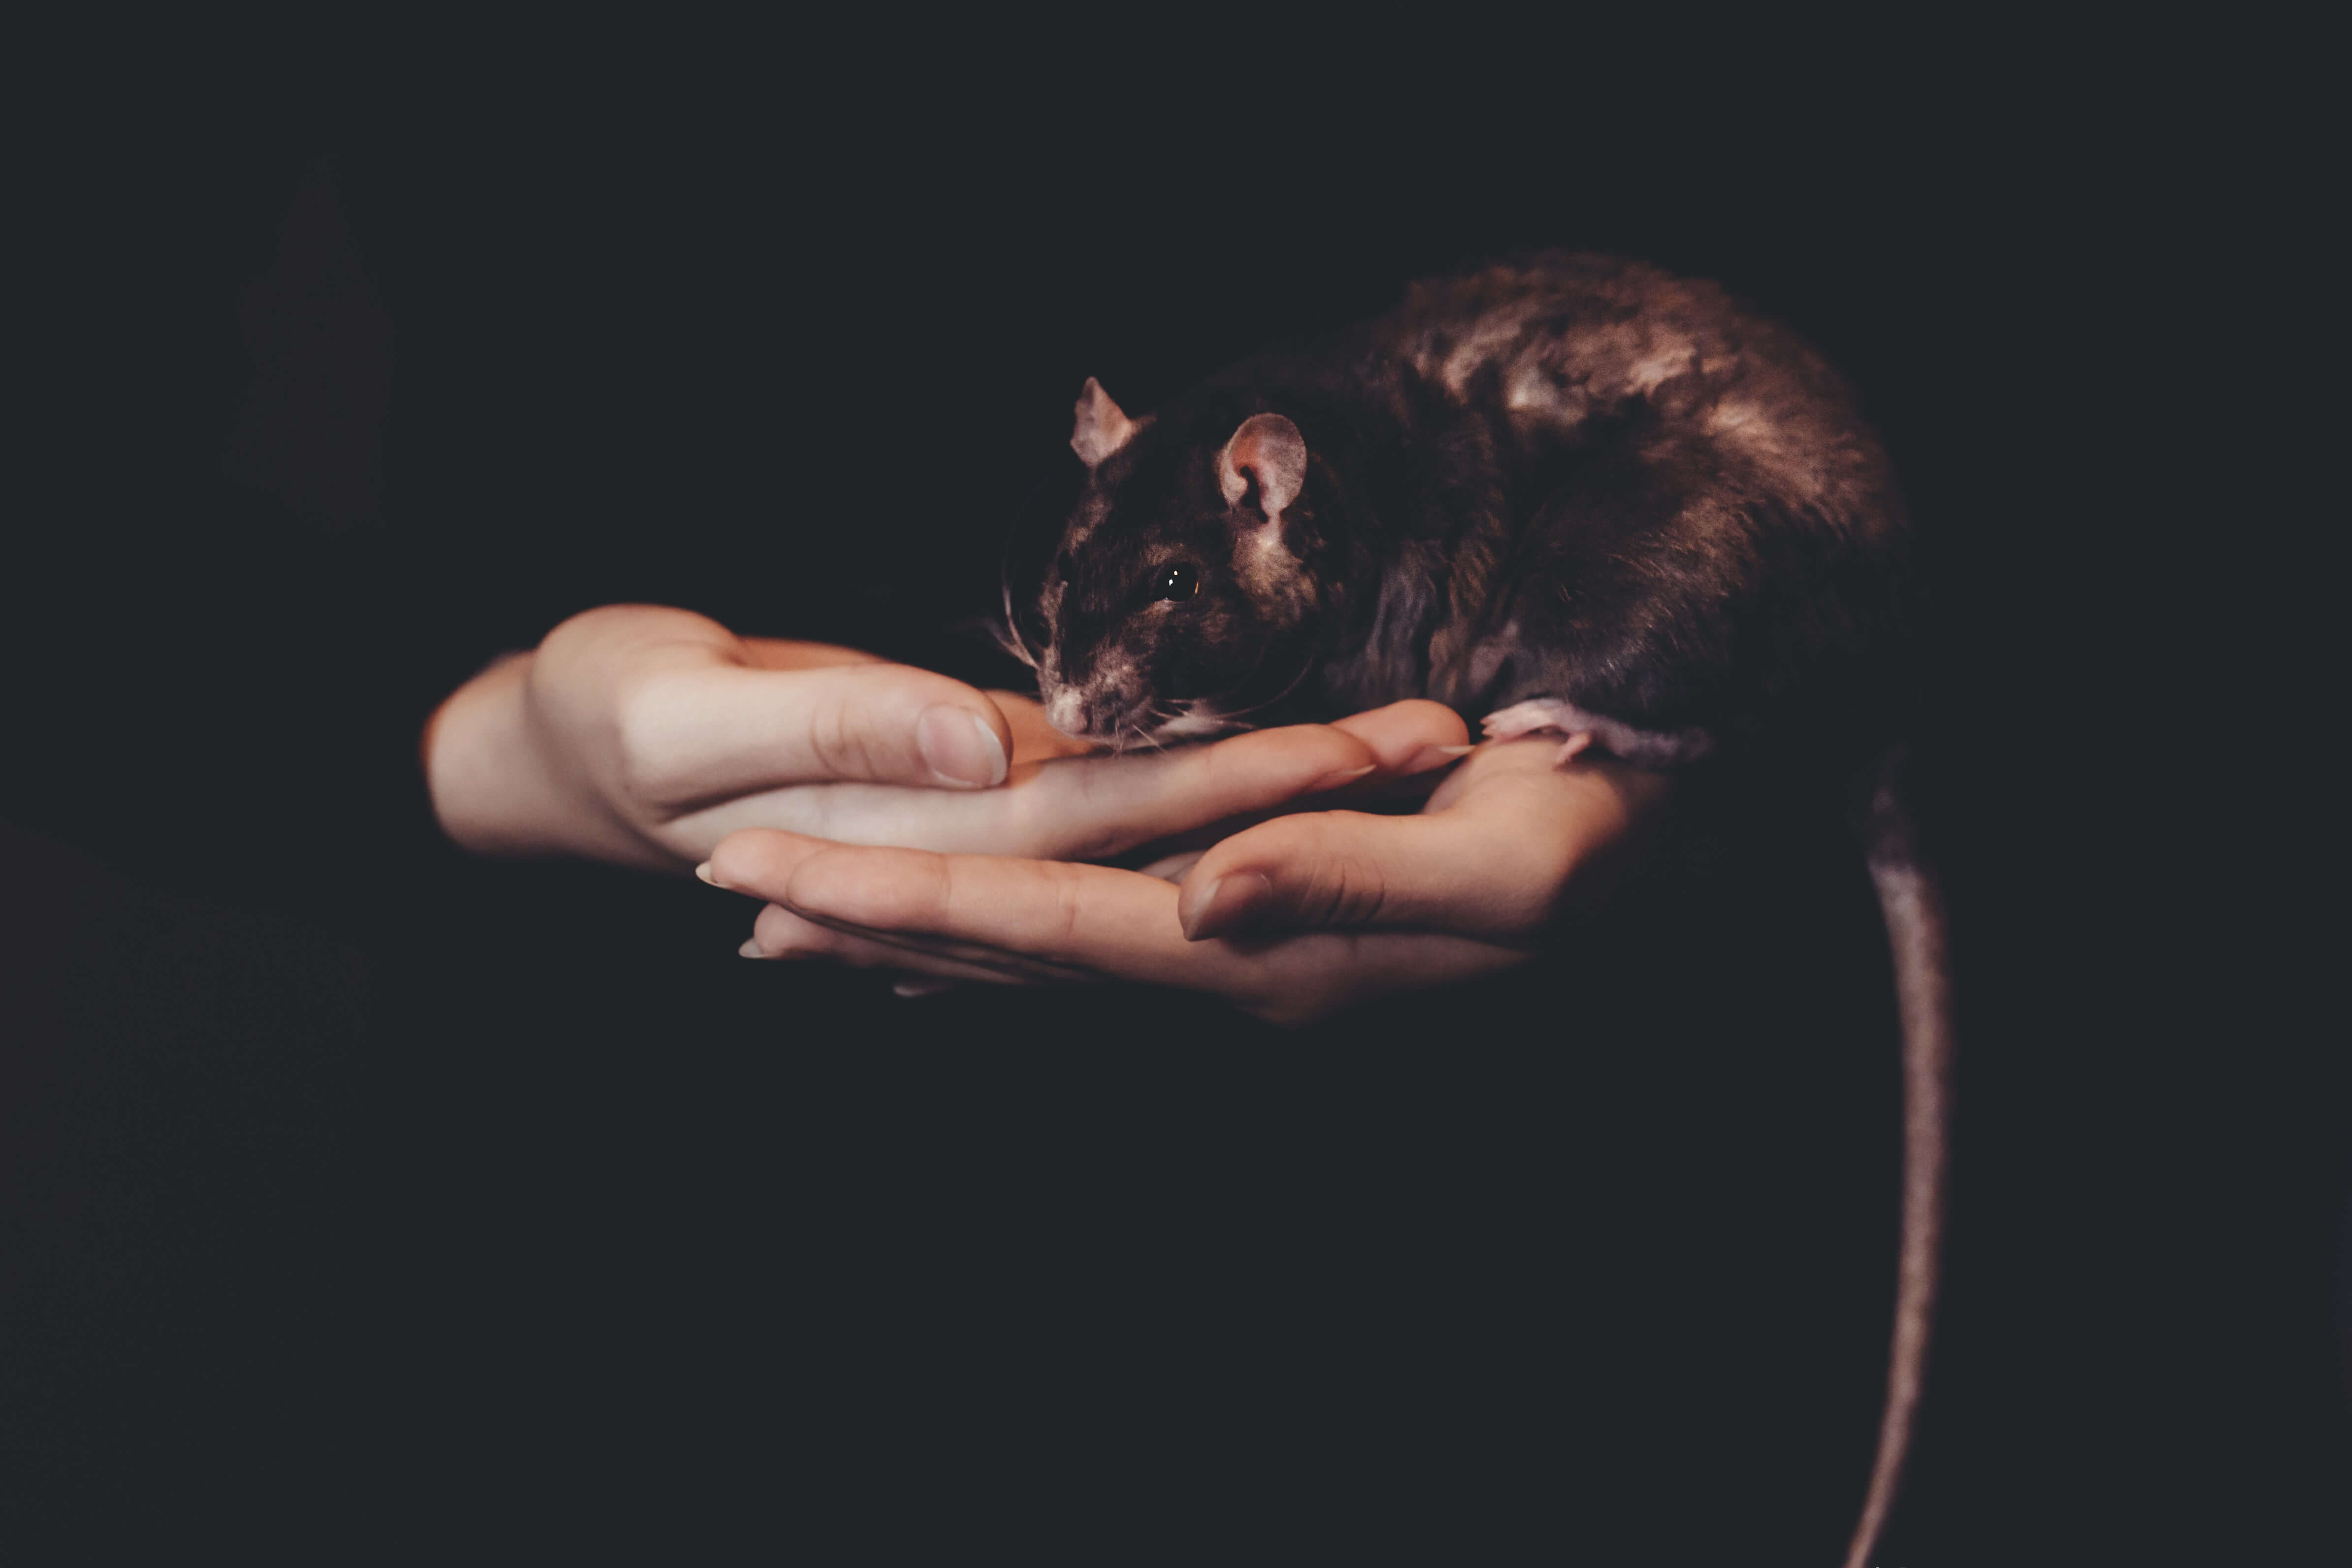 Os animais sabem divertir-se. A história de como os cientistas brincavam de esconde-esconde com ratos